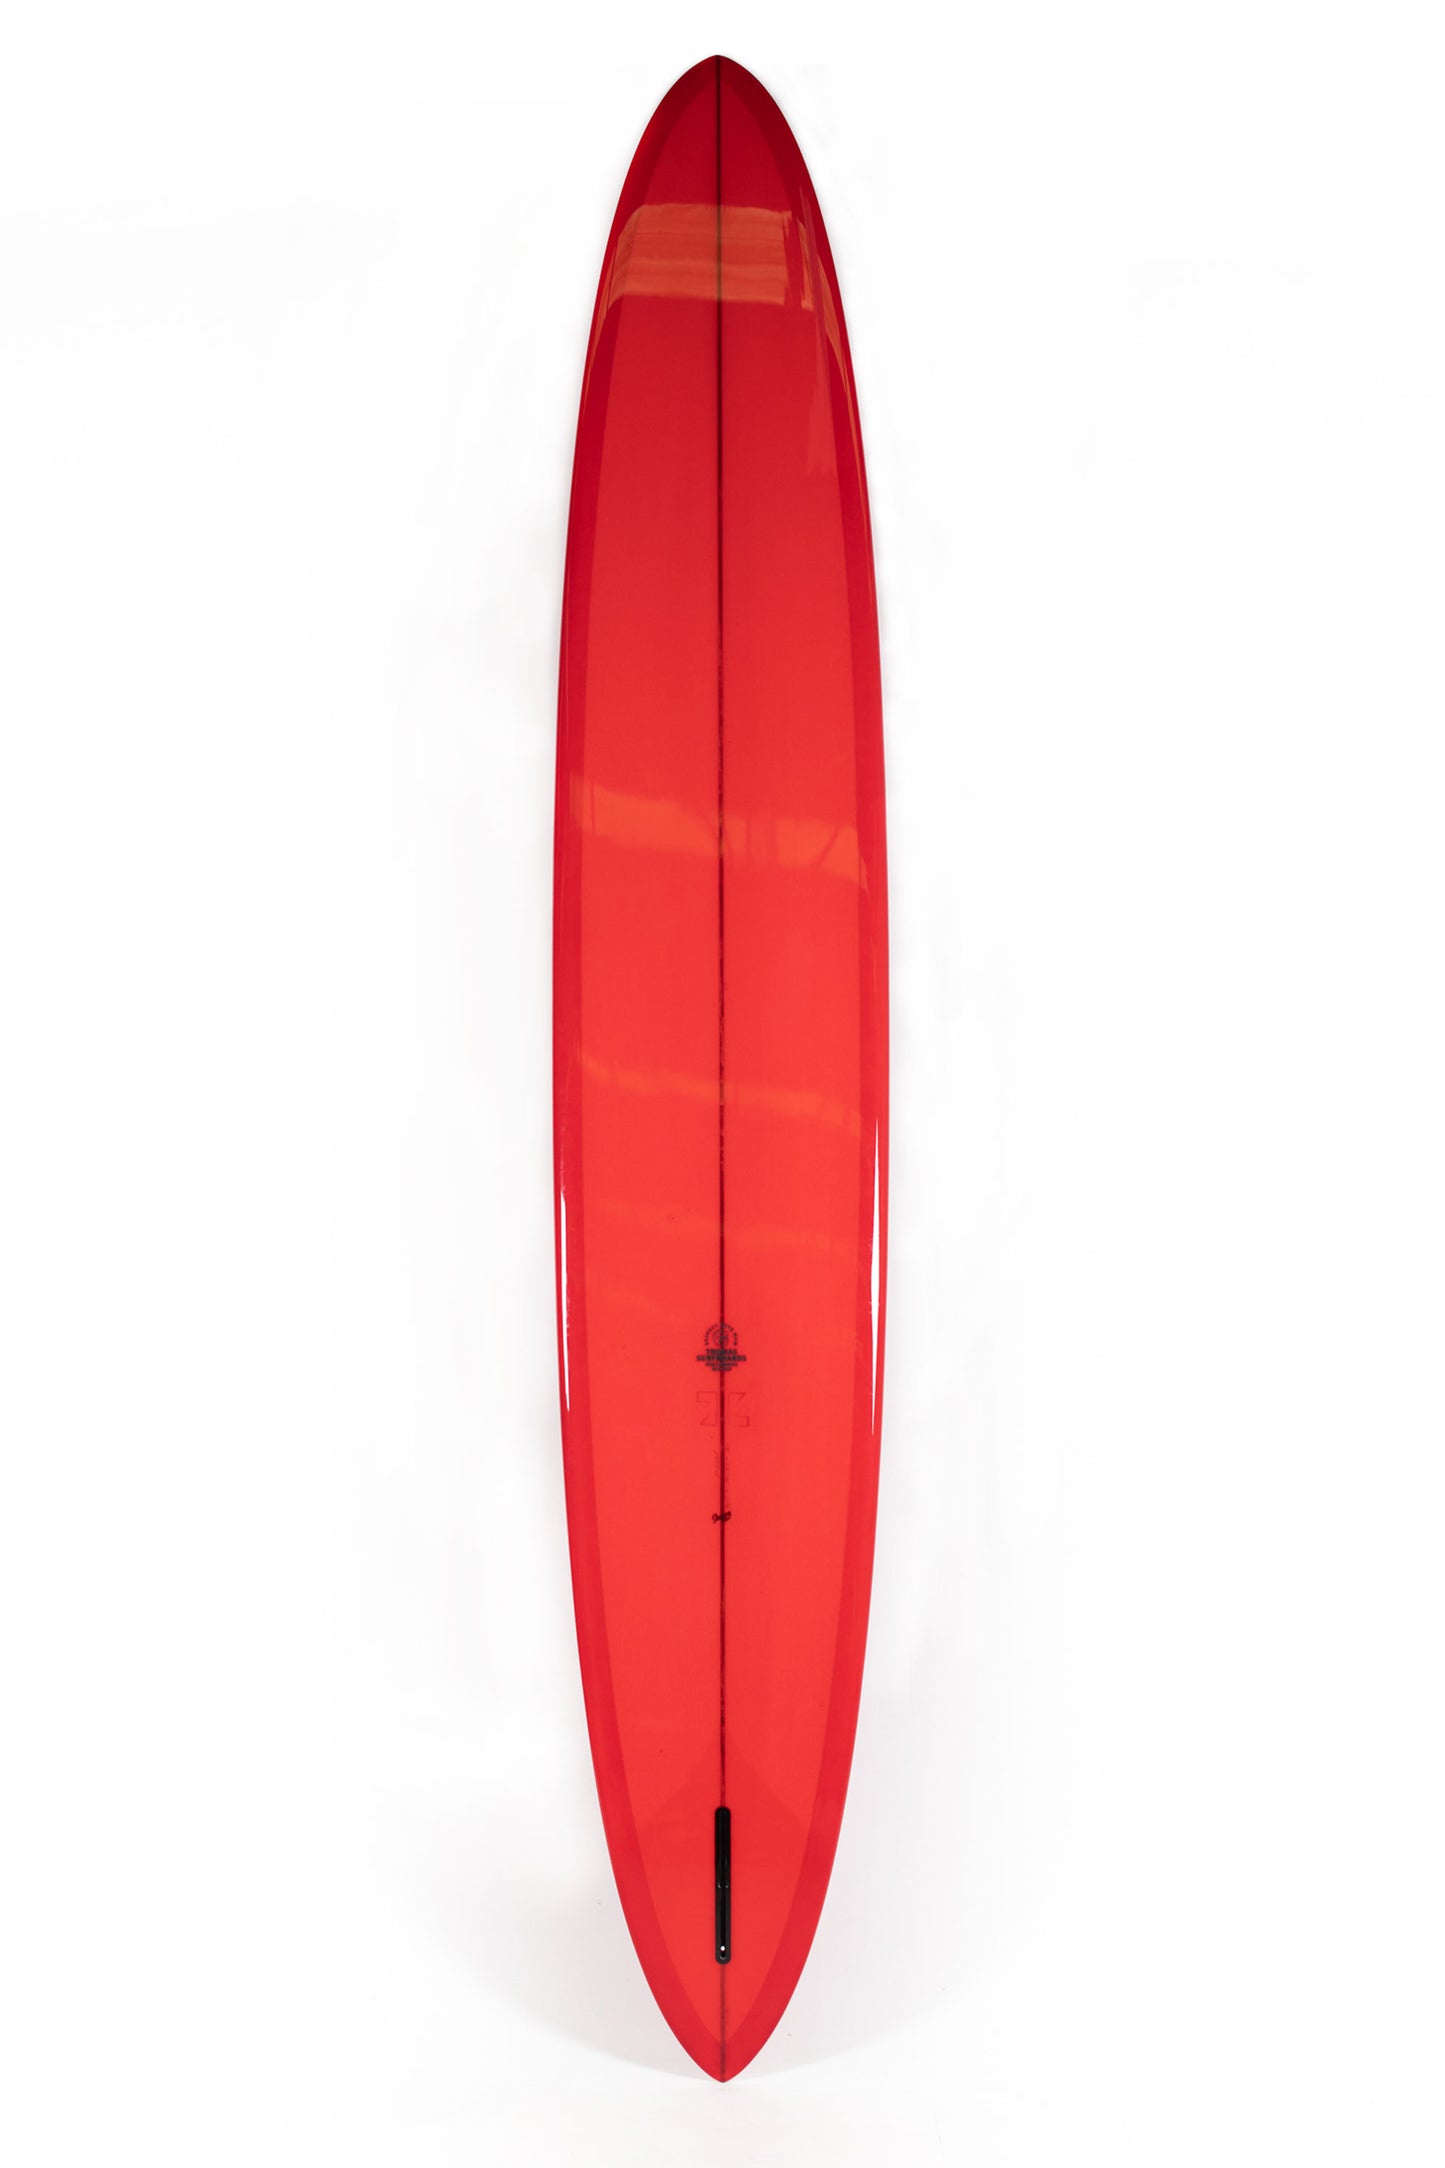 Pukas Surf Shop - Thomas Surfboards - POSTIE - 12'0" x 23 3/8 x 3 1/4 - POSTIE12